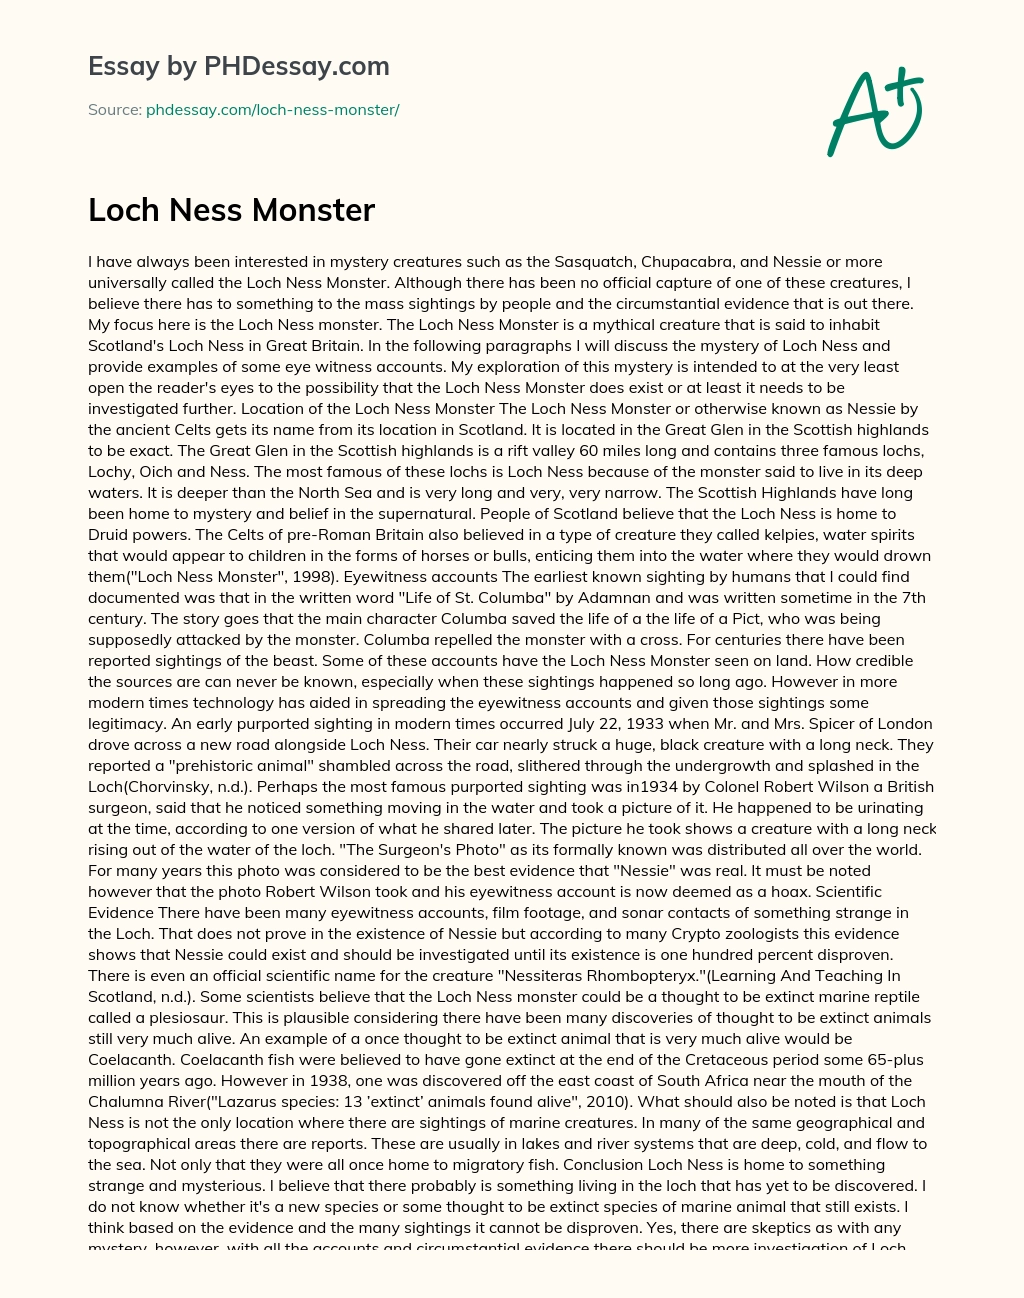 Loch Ness Monster essay